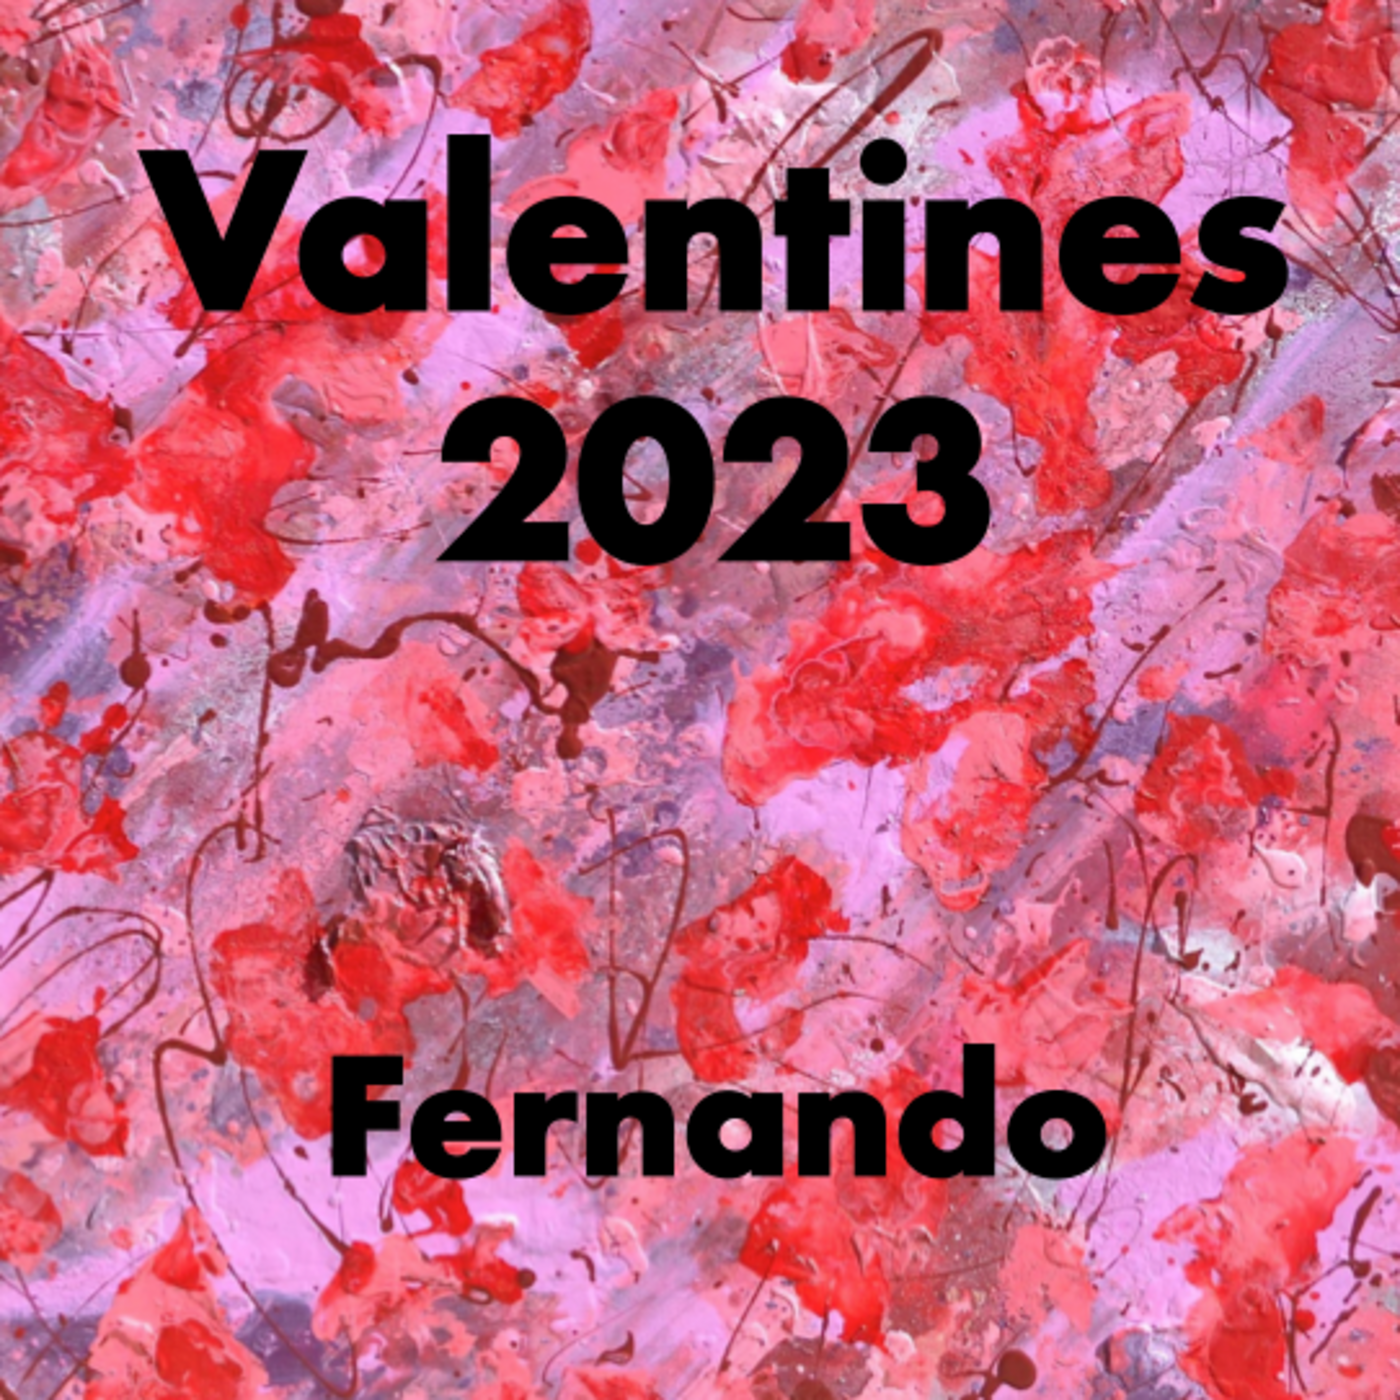 Episode 69: Fernando - Valentines 2023